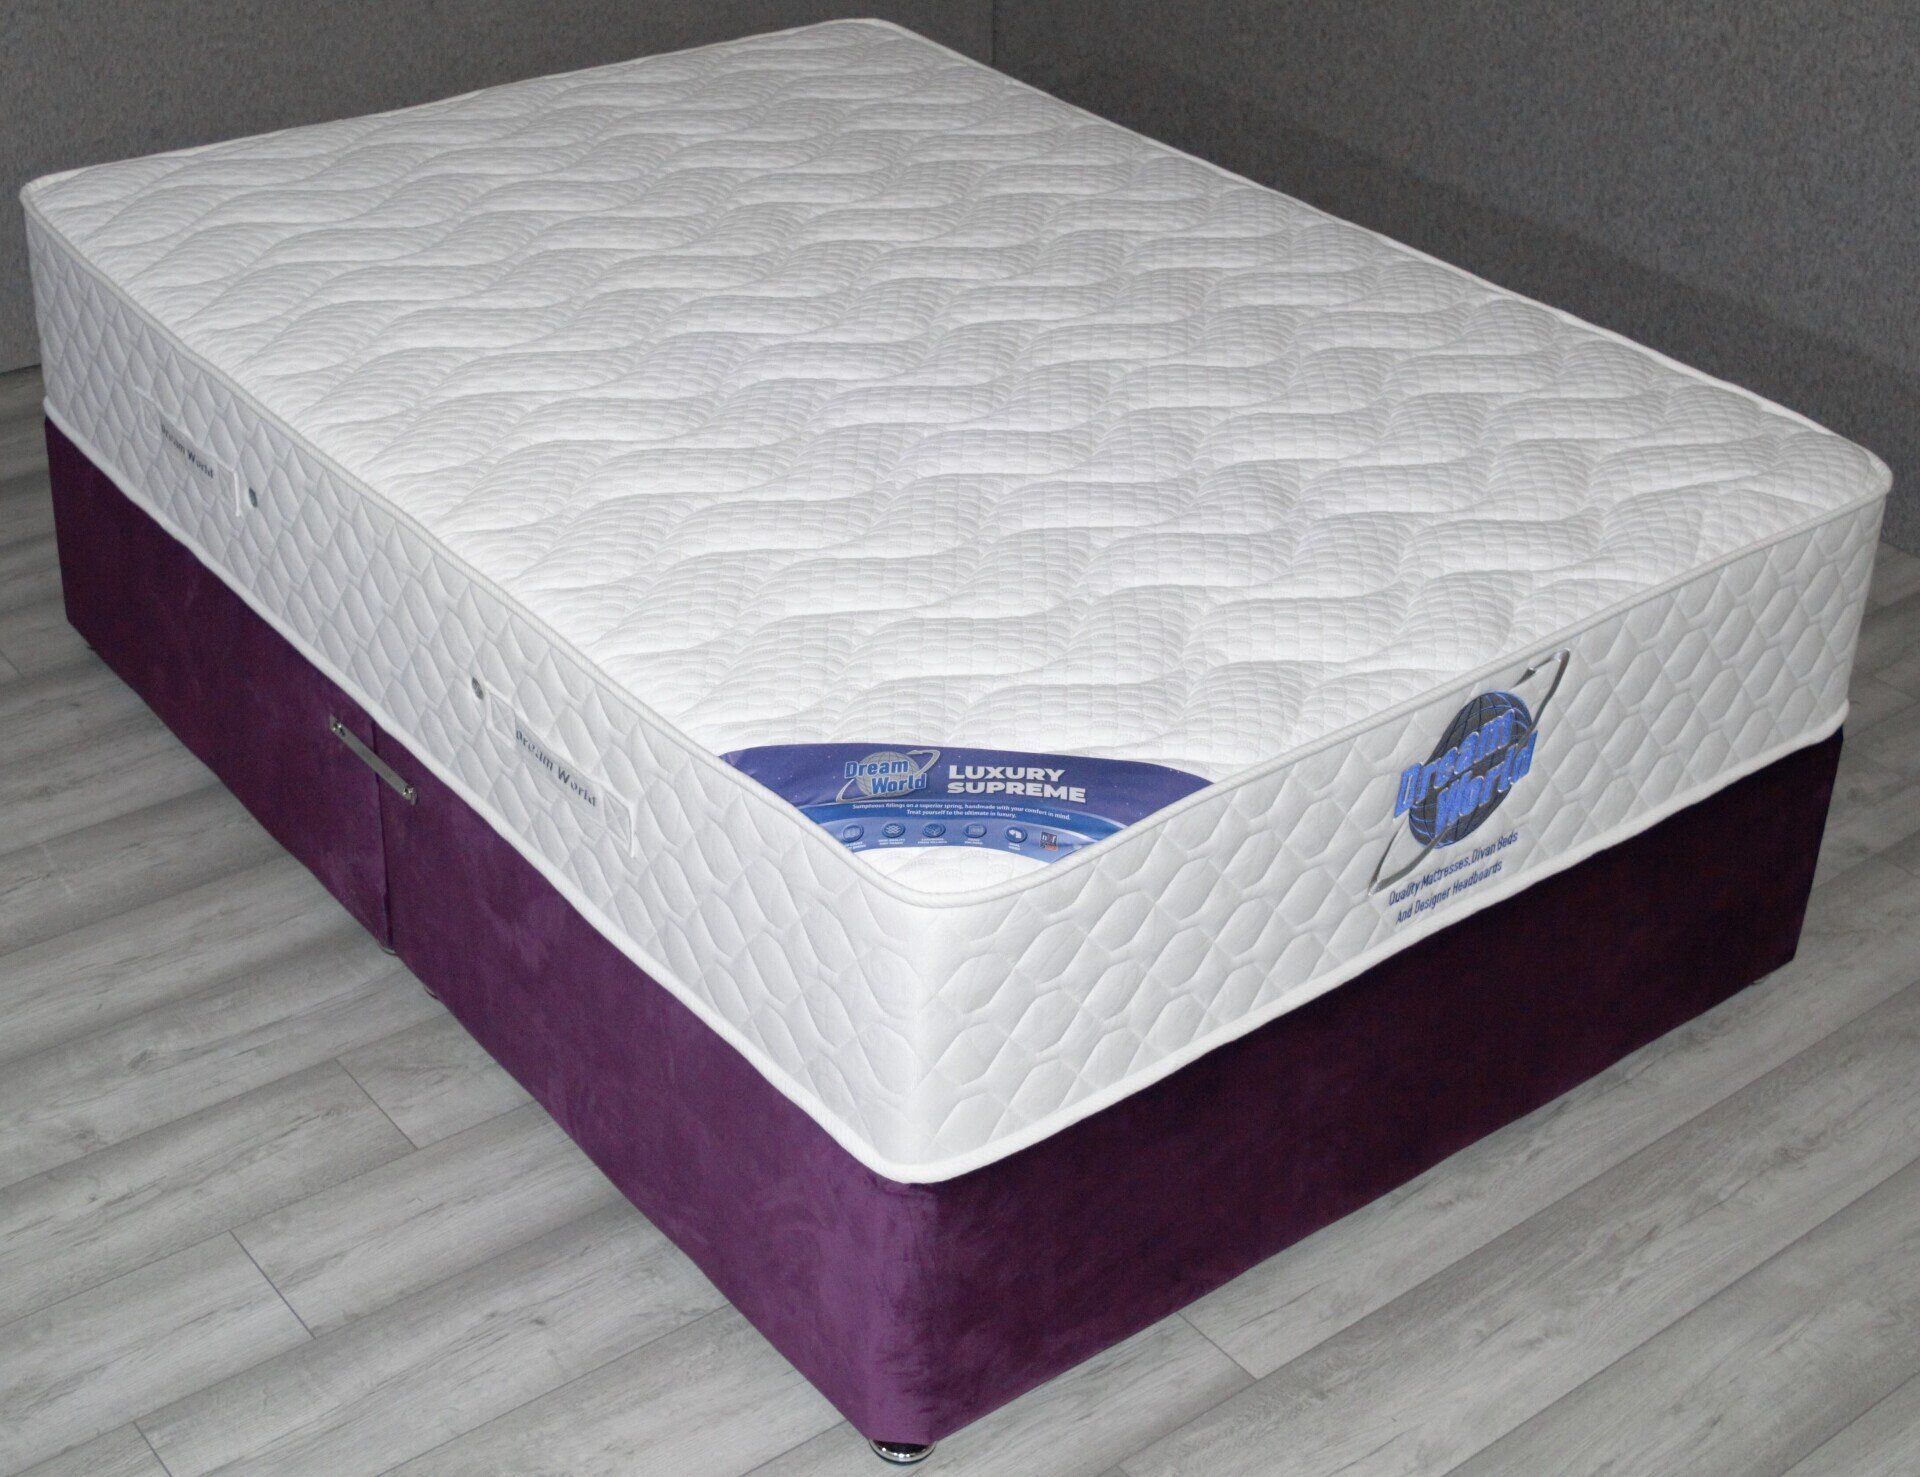 suite sleep little pocket spring mattress